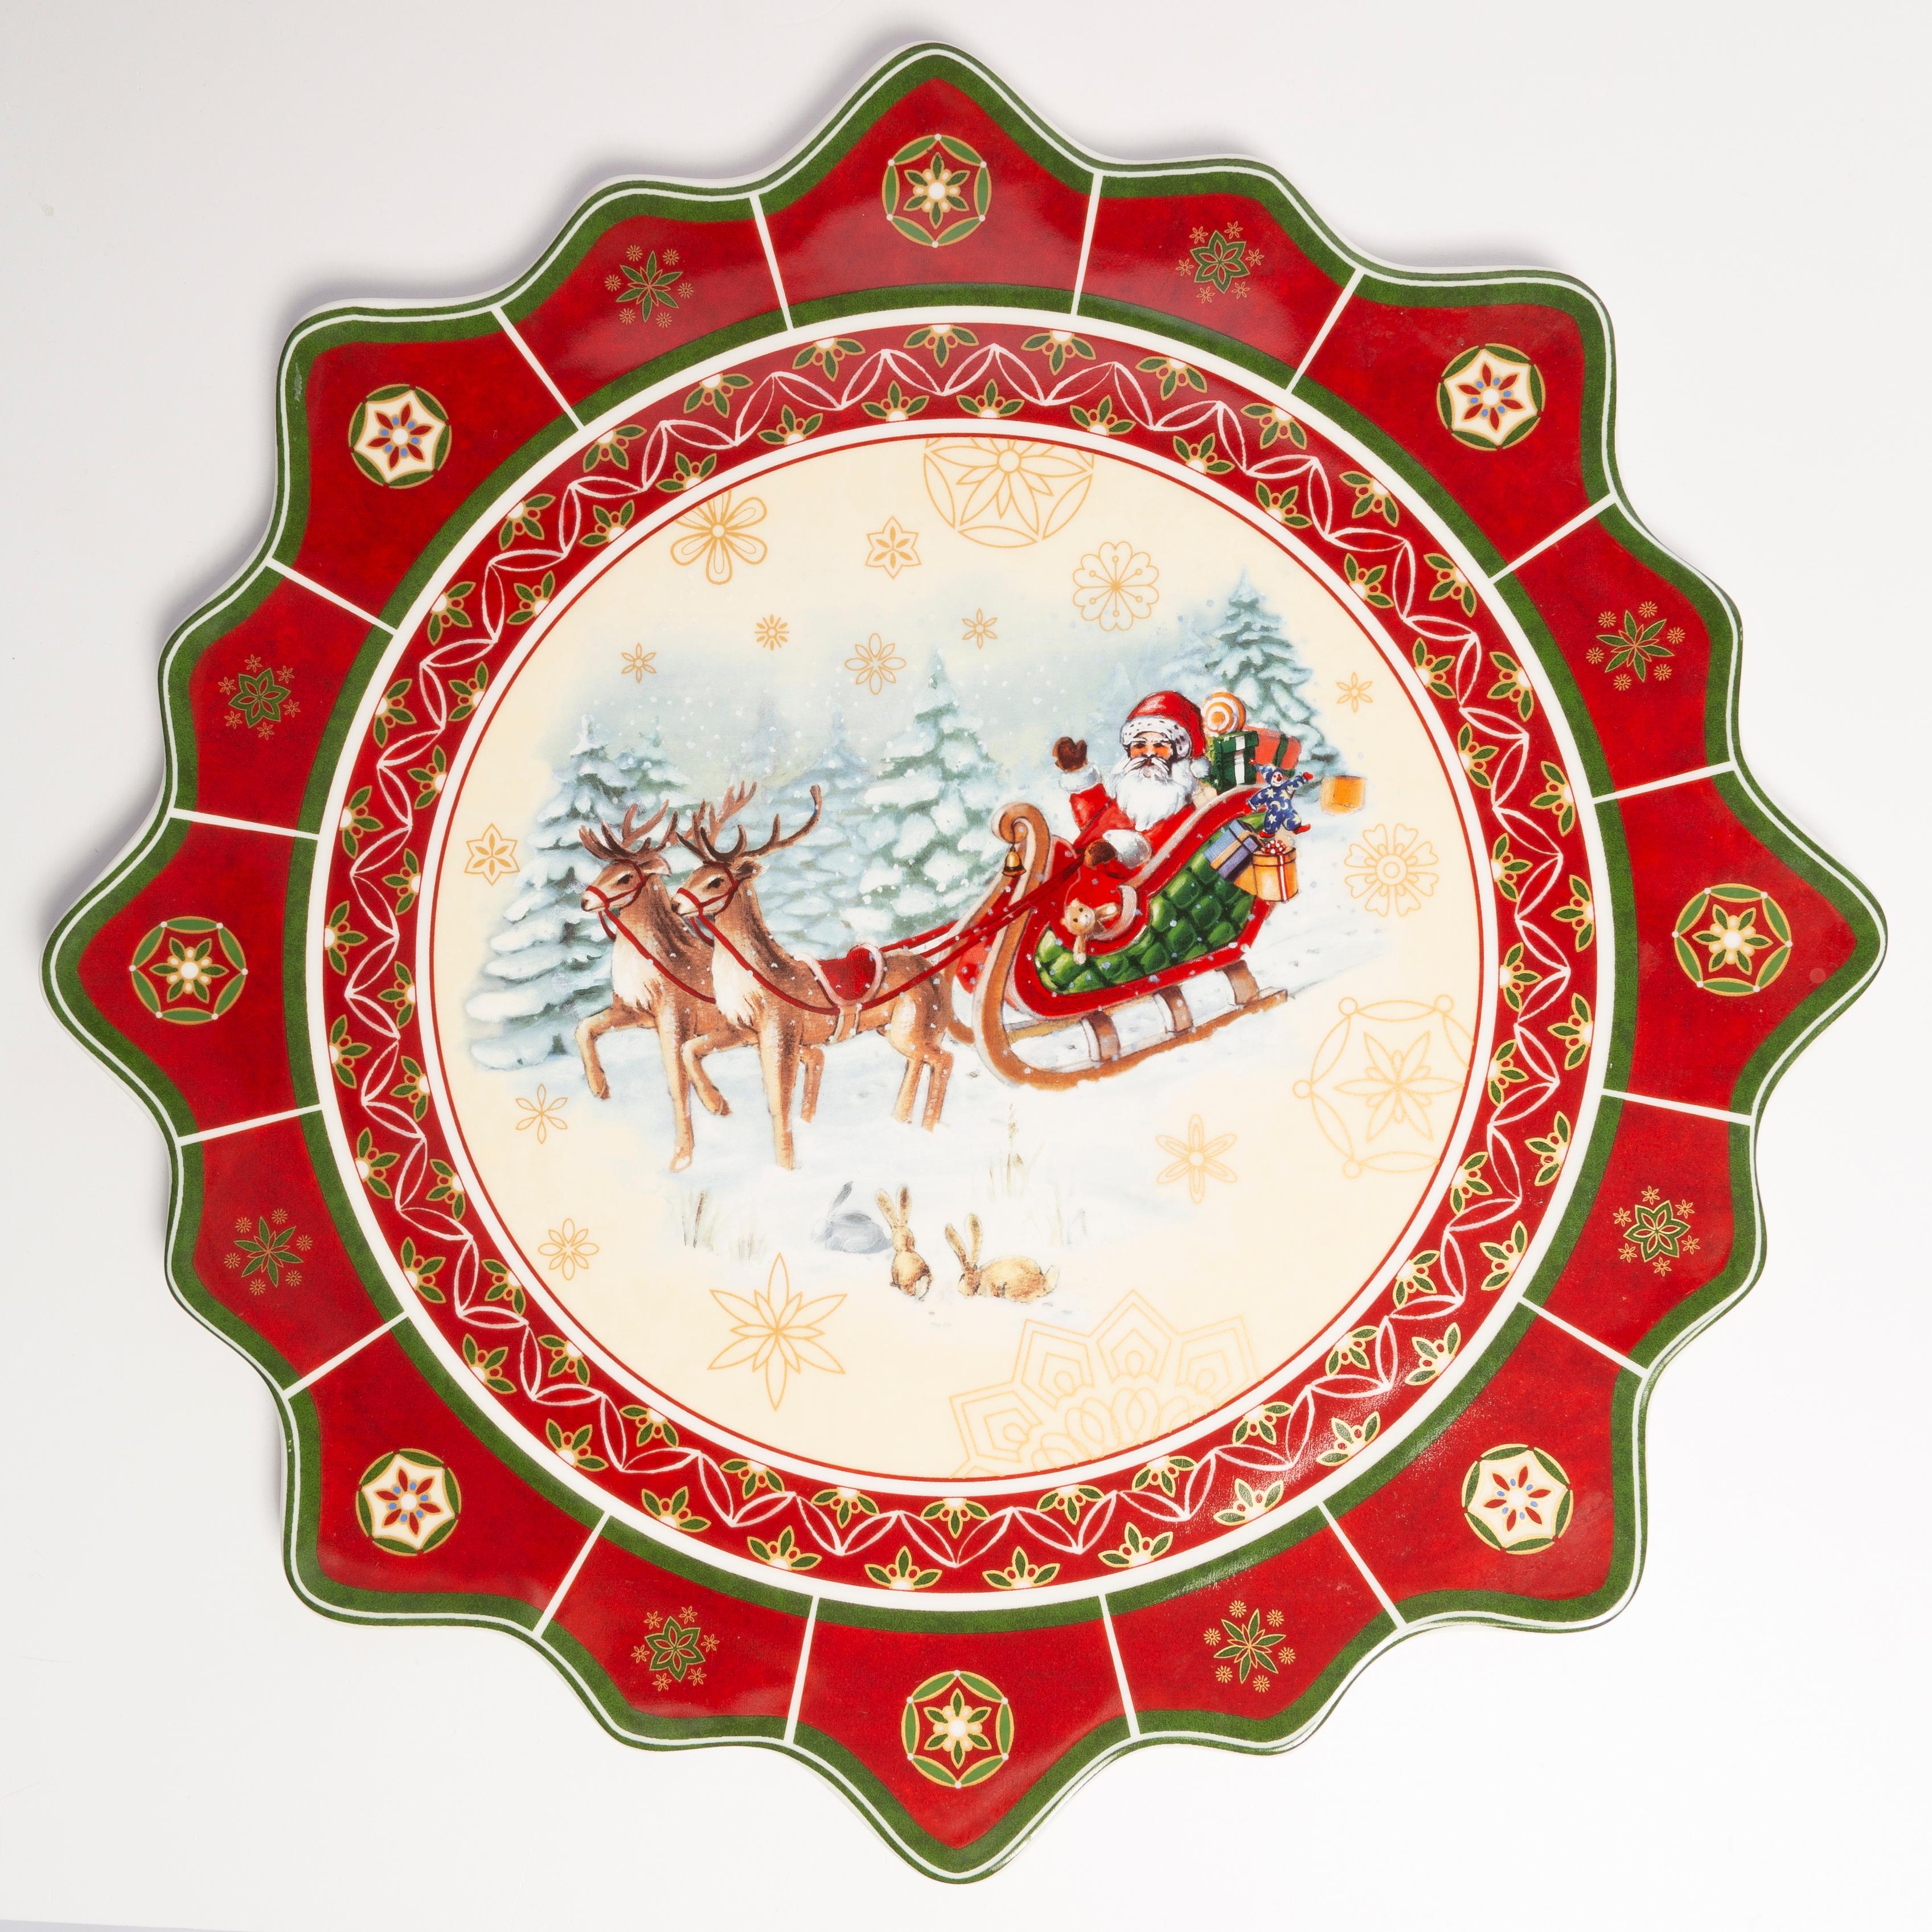 Der runde Teller Toy's Delight von Villeroy&Boch mit einem Durchmesser von 44 cm ist perfekt zum Servieren von Snacks, Kuchen, Fisch oder Aufschnitt. Eine große Platte mit dekorativen Rändern ist mit weihnachtlichen Motiven verziert, d. h. mit dem